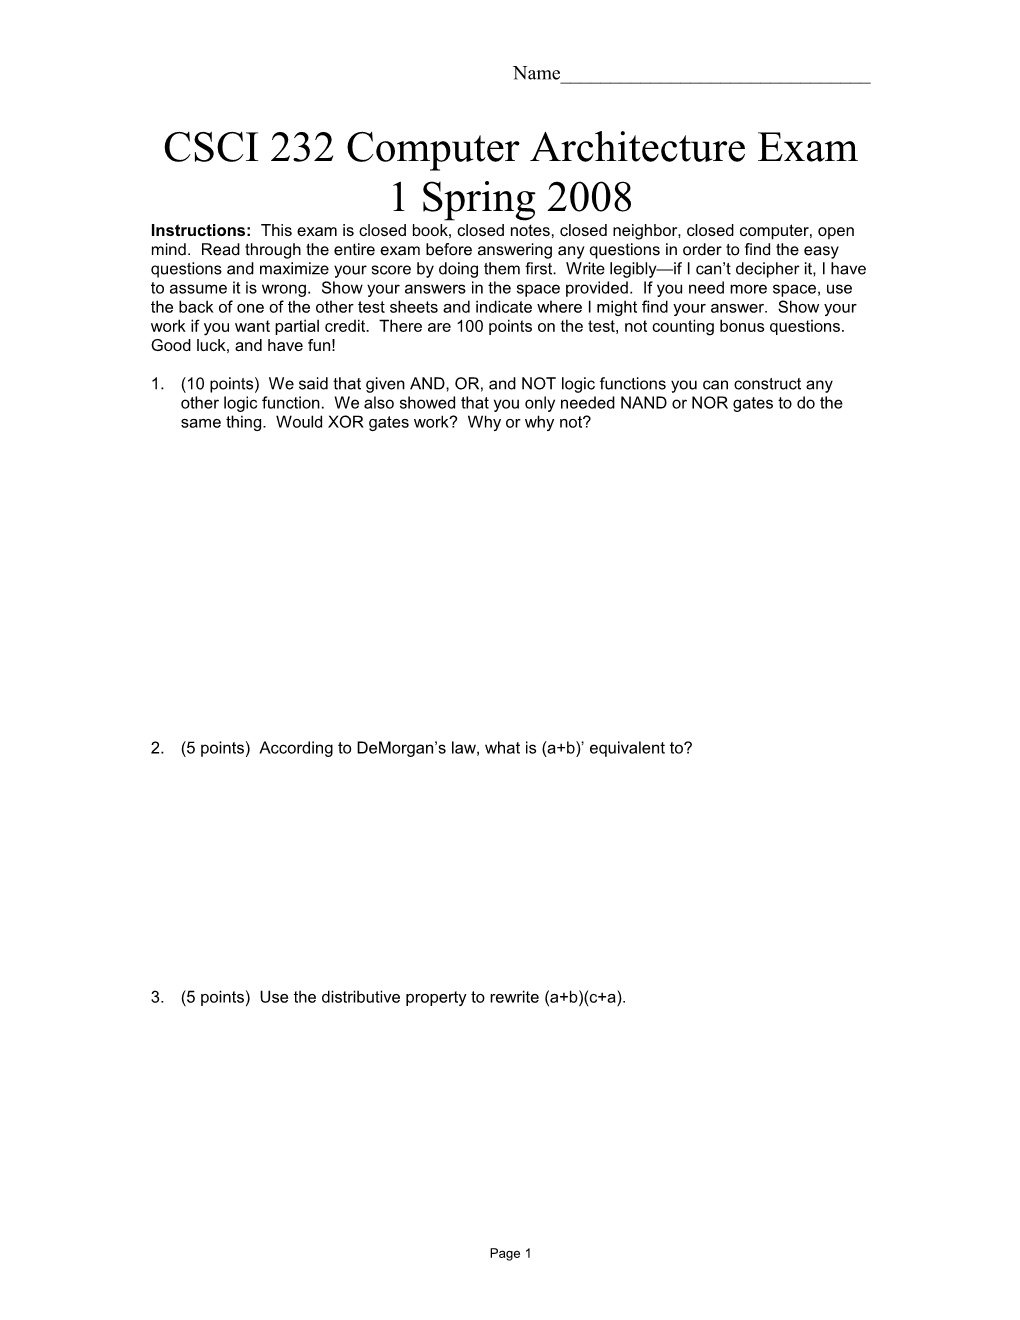 CSCI 232 Computer Architecture Exam 1 Spring 2008